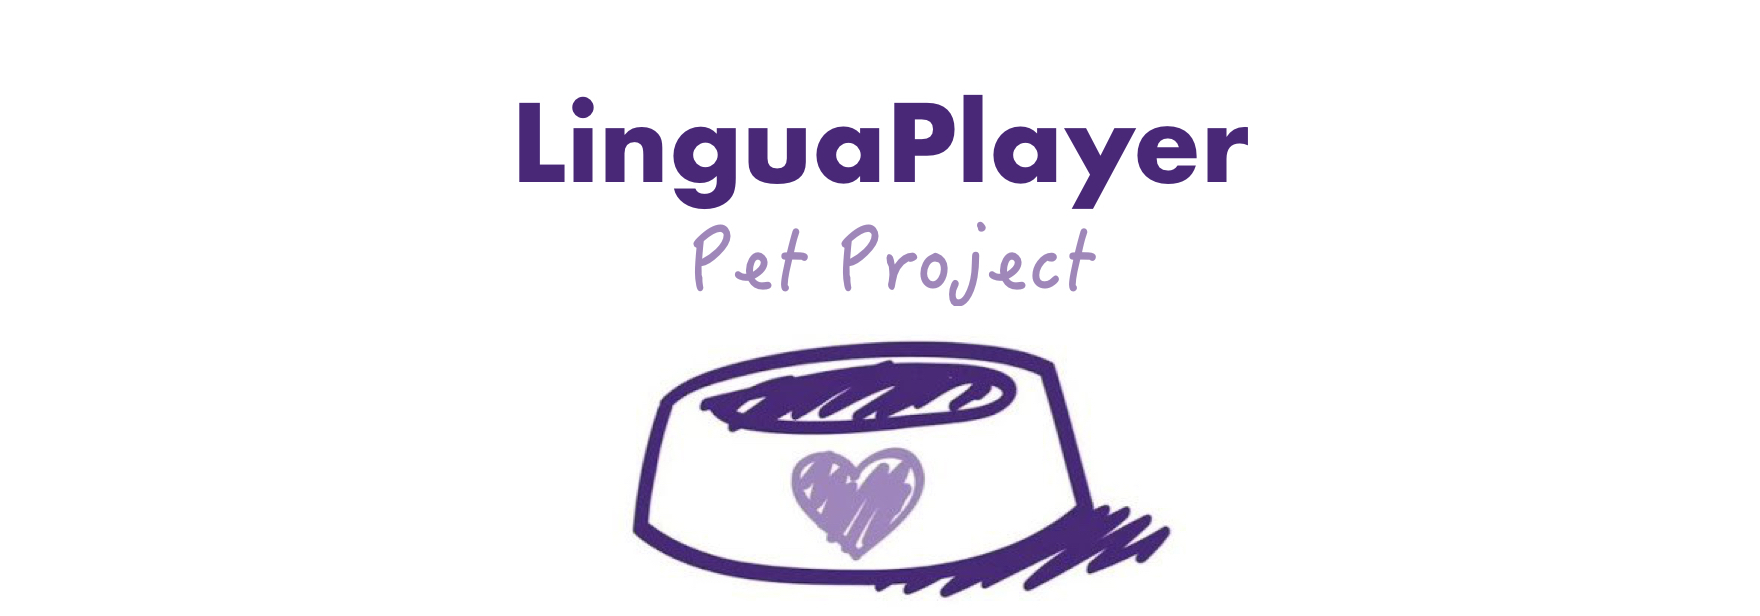 Обложка поста Мой pet-проект: видеоплеер с переводимыми субтитрами LinguaPlayer